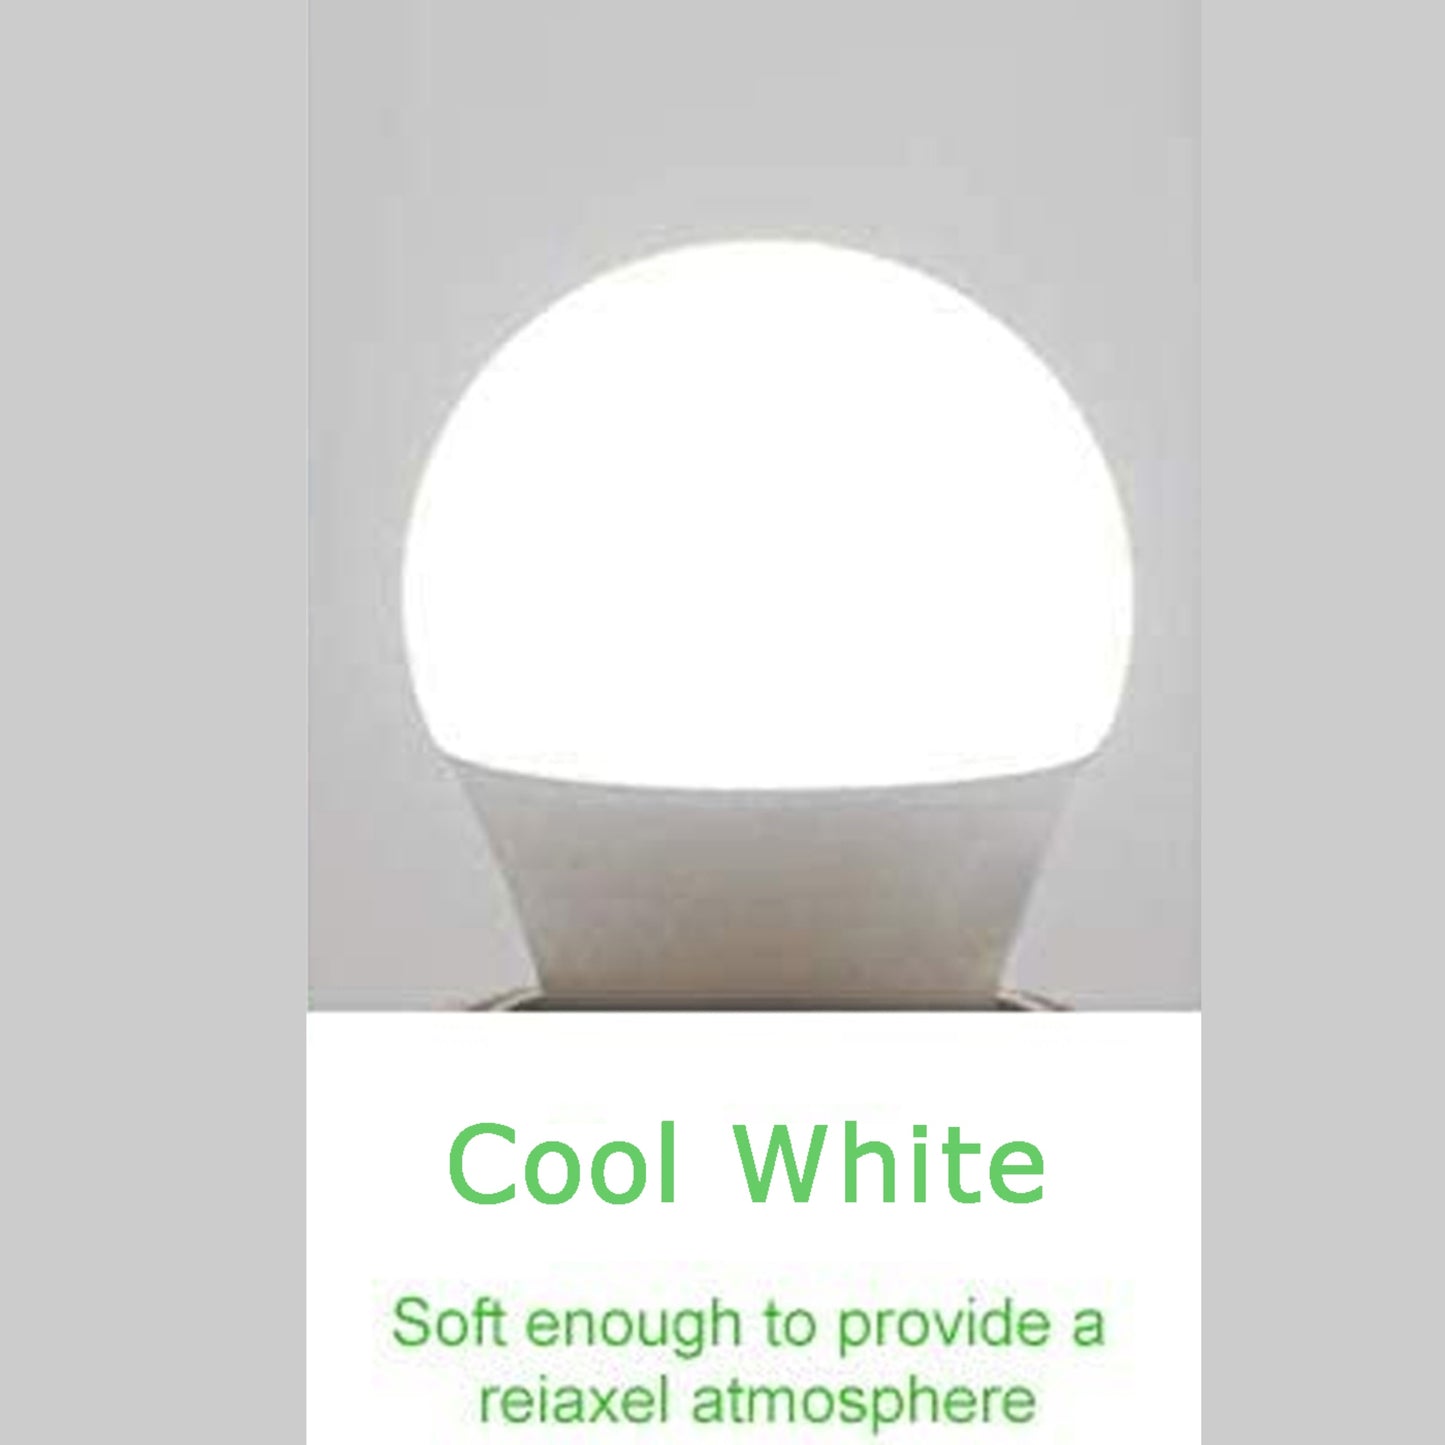 5 W B22 Schraub-LED-Licht GLS-Lampen, energiesparende Edison Cool White 6000 K nicht dimmbare Lichter